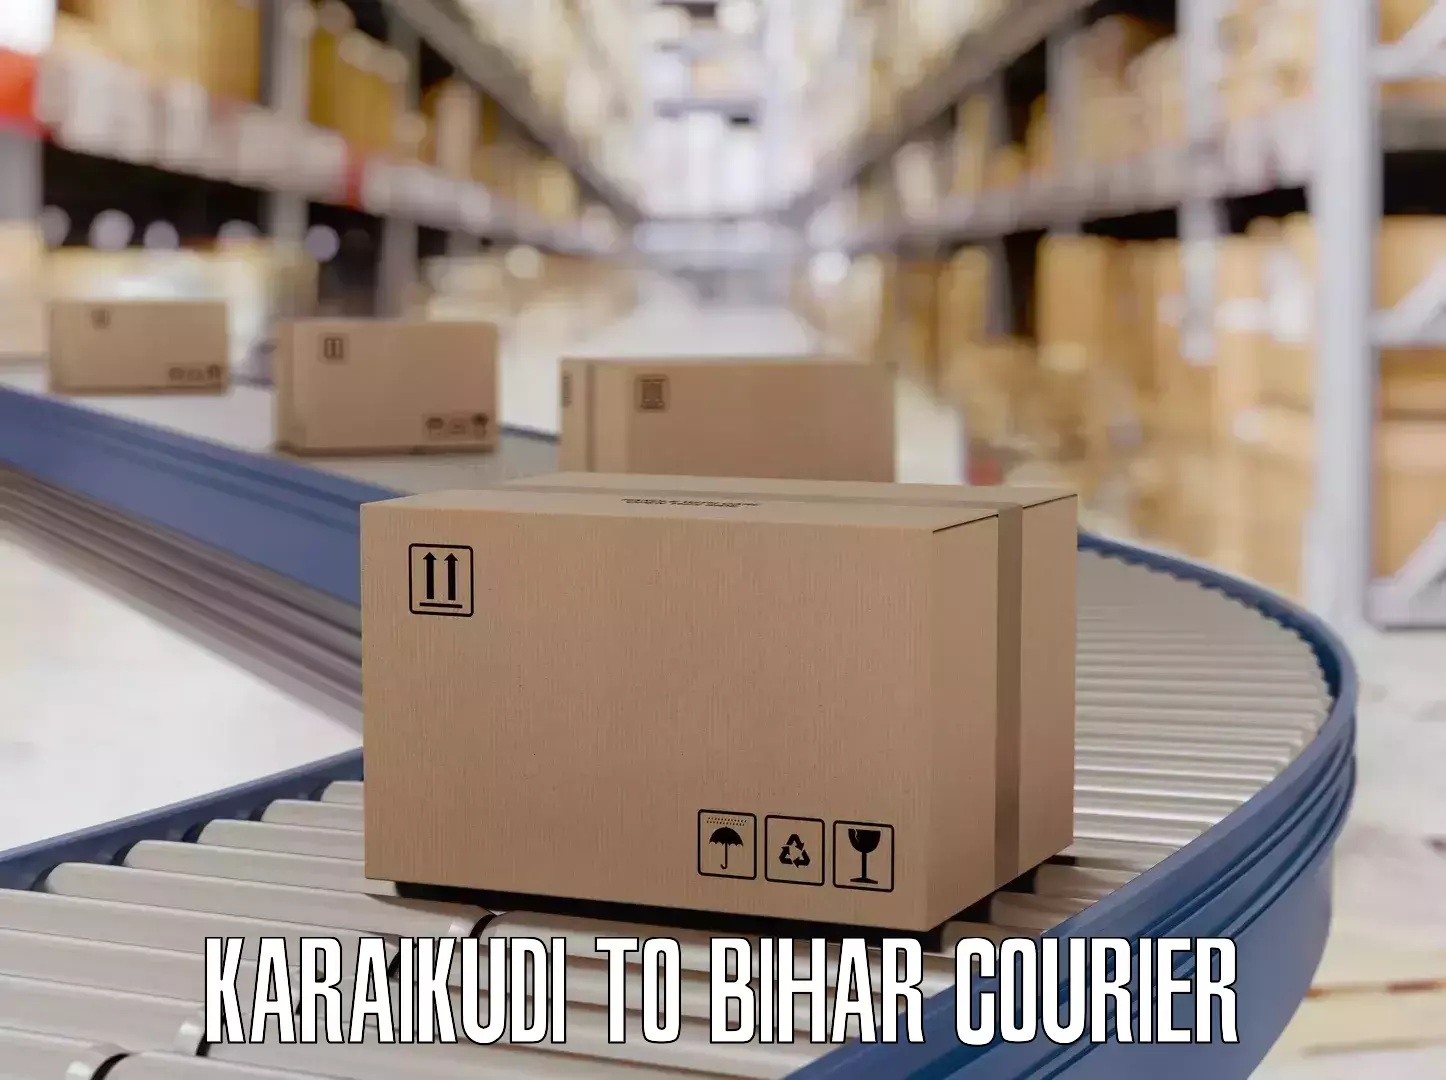 Luggage delivery network Karaikudi to Bharwara